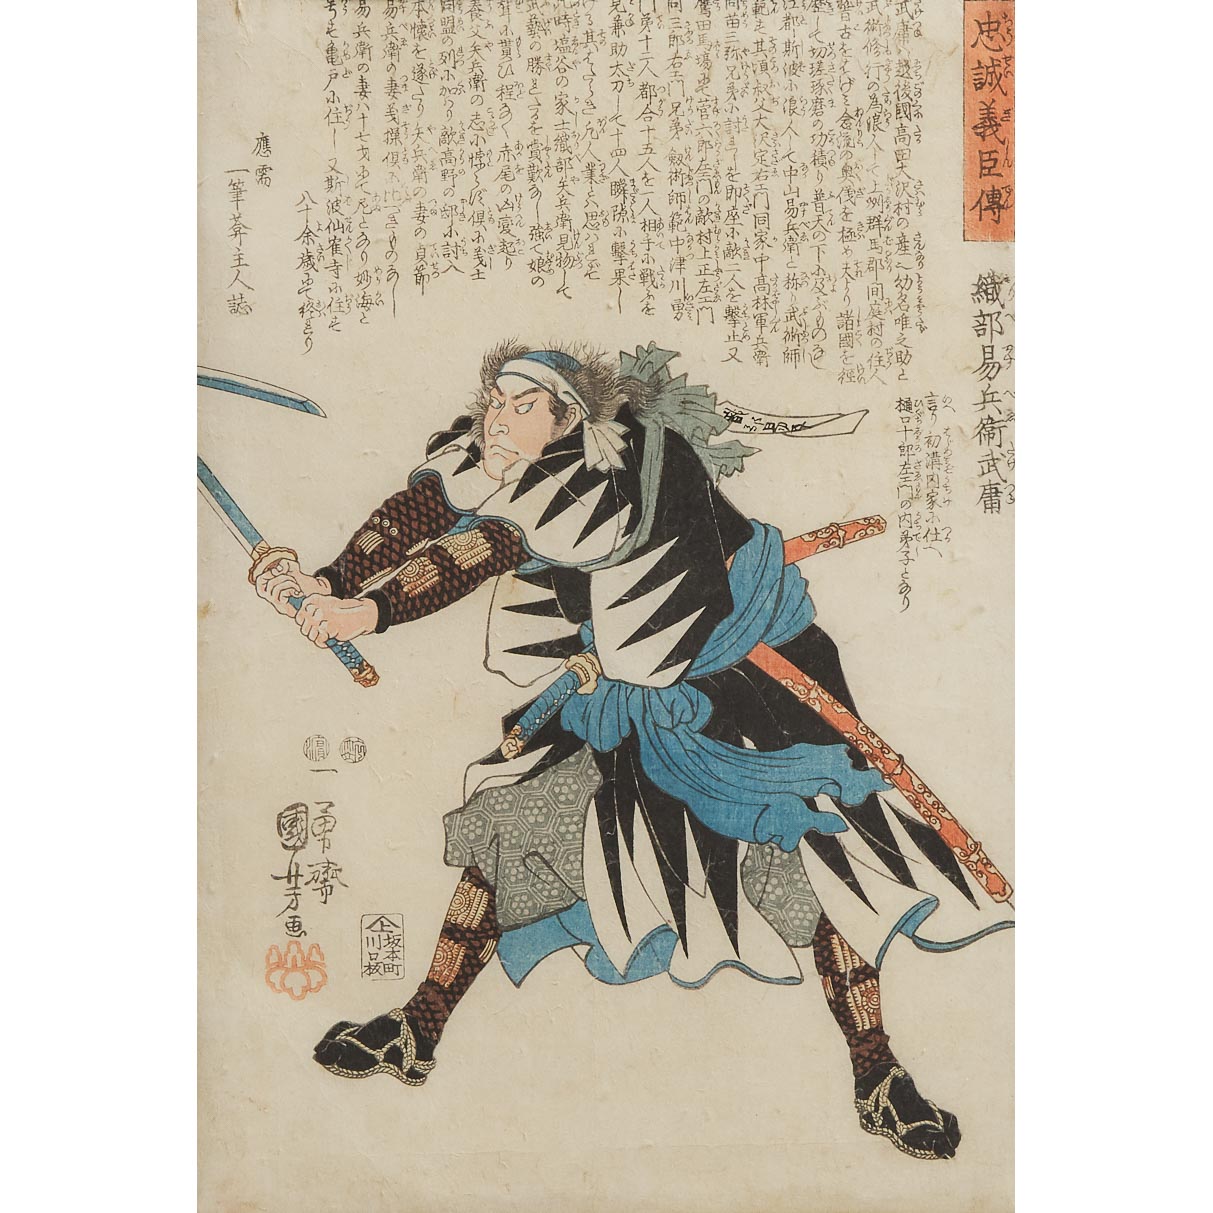 Utagawa Kuniyoshi (1798-1861), Toyohara Kunichika (1835-1900), Toshihide Migata (1863-1925), A Group of Five Ukiyo-e Woodblock Prints, Edo/Meiji Period, 19th Century